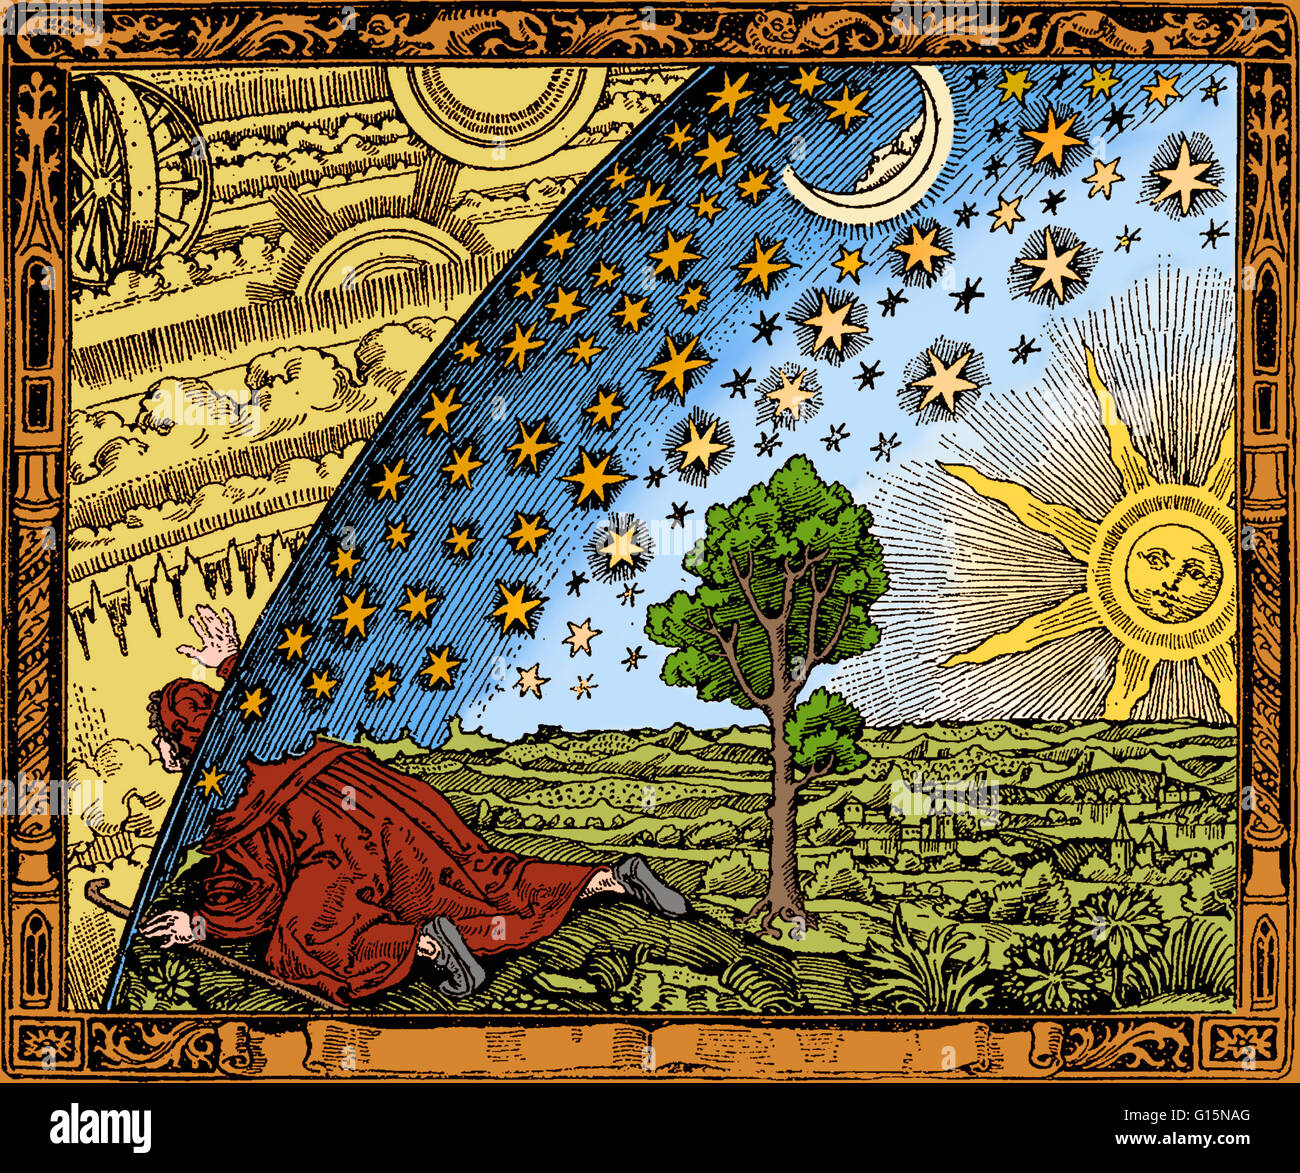 Einem Holzstich von Flammarion eines unbekannten Künstlers, die erstmals in Camille Flammarions L'atmosphere: Meteorologie Populaire (1888). Das Bild zeigt einen Mann, kriechen unter dem Rand des Himmels, dargestellt als wäre es eine feste Halbkugel, betrachten die Stockfoto